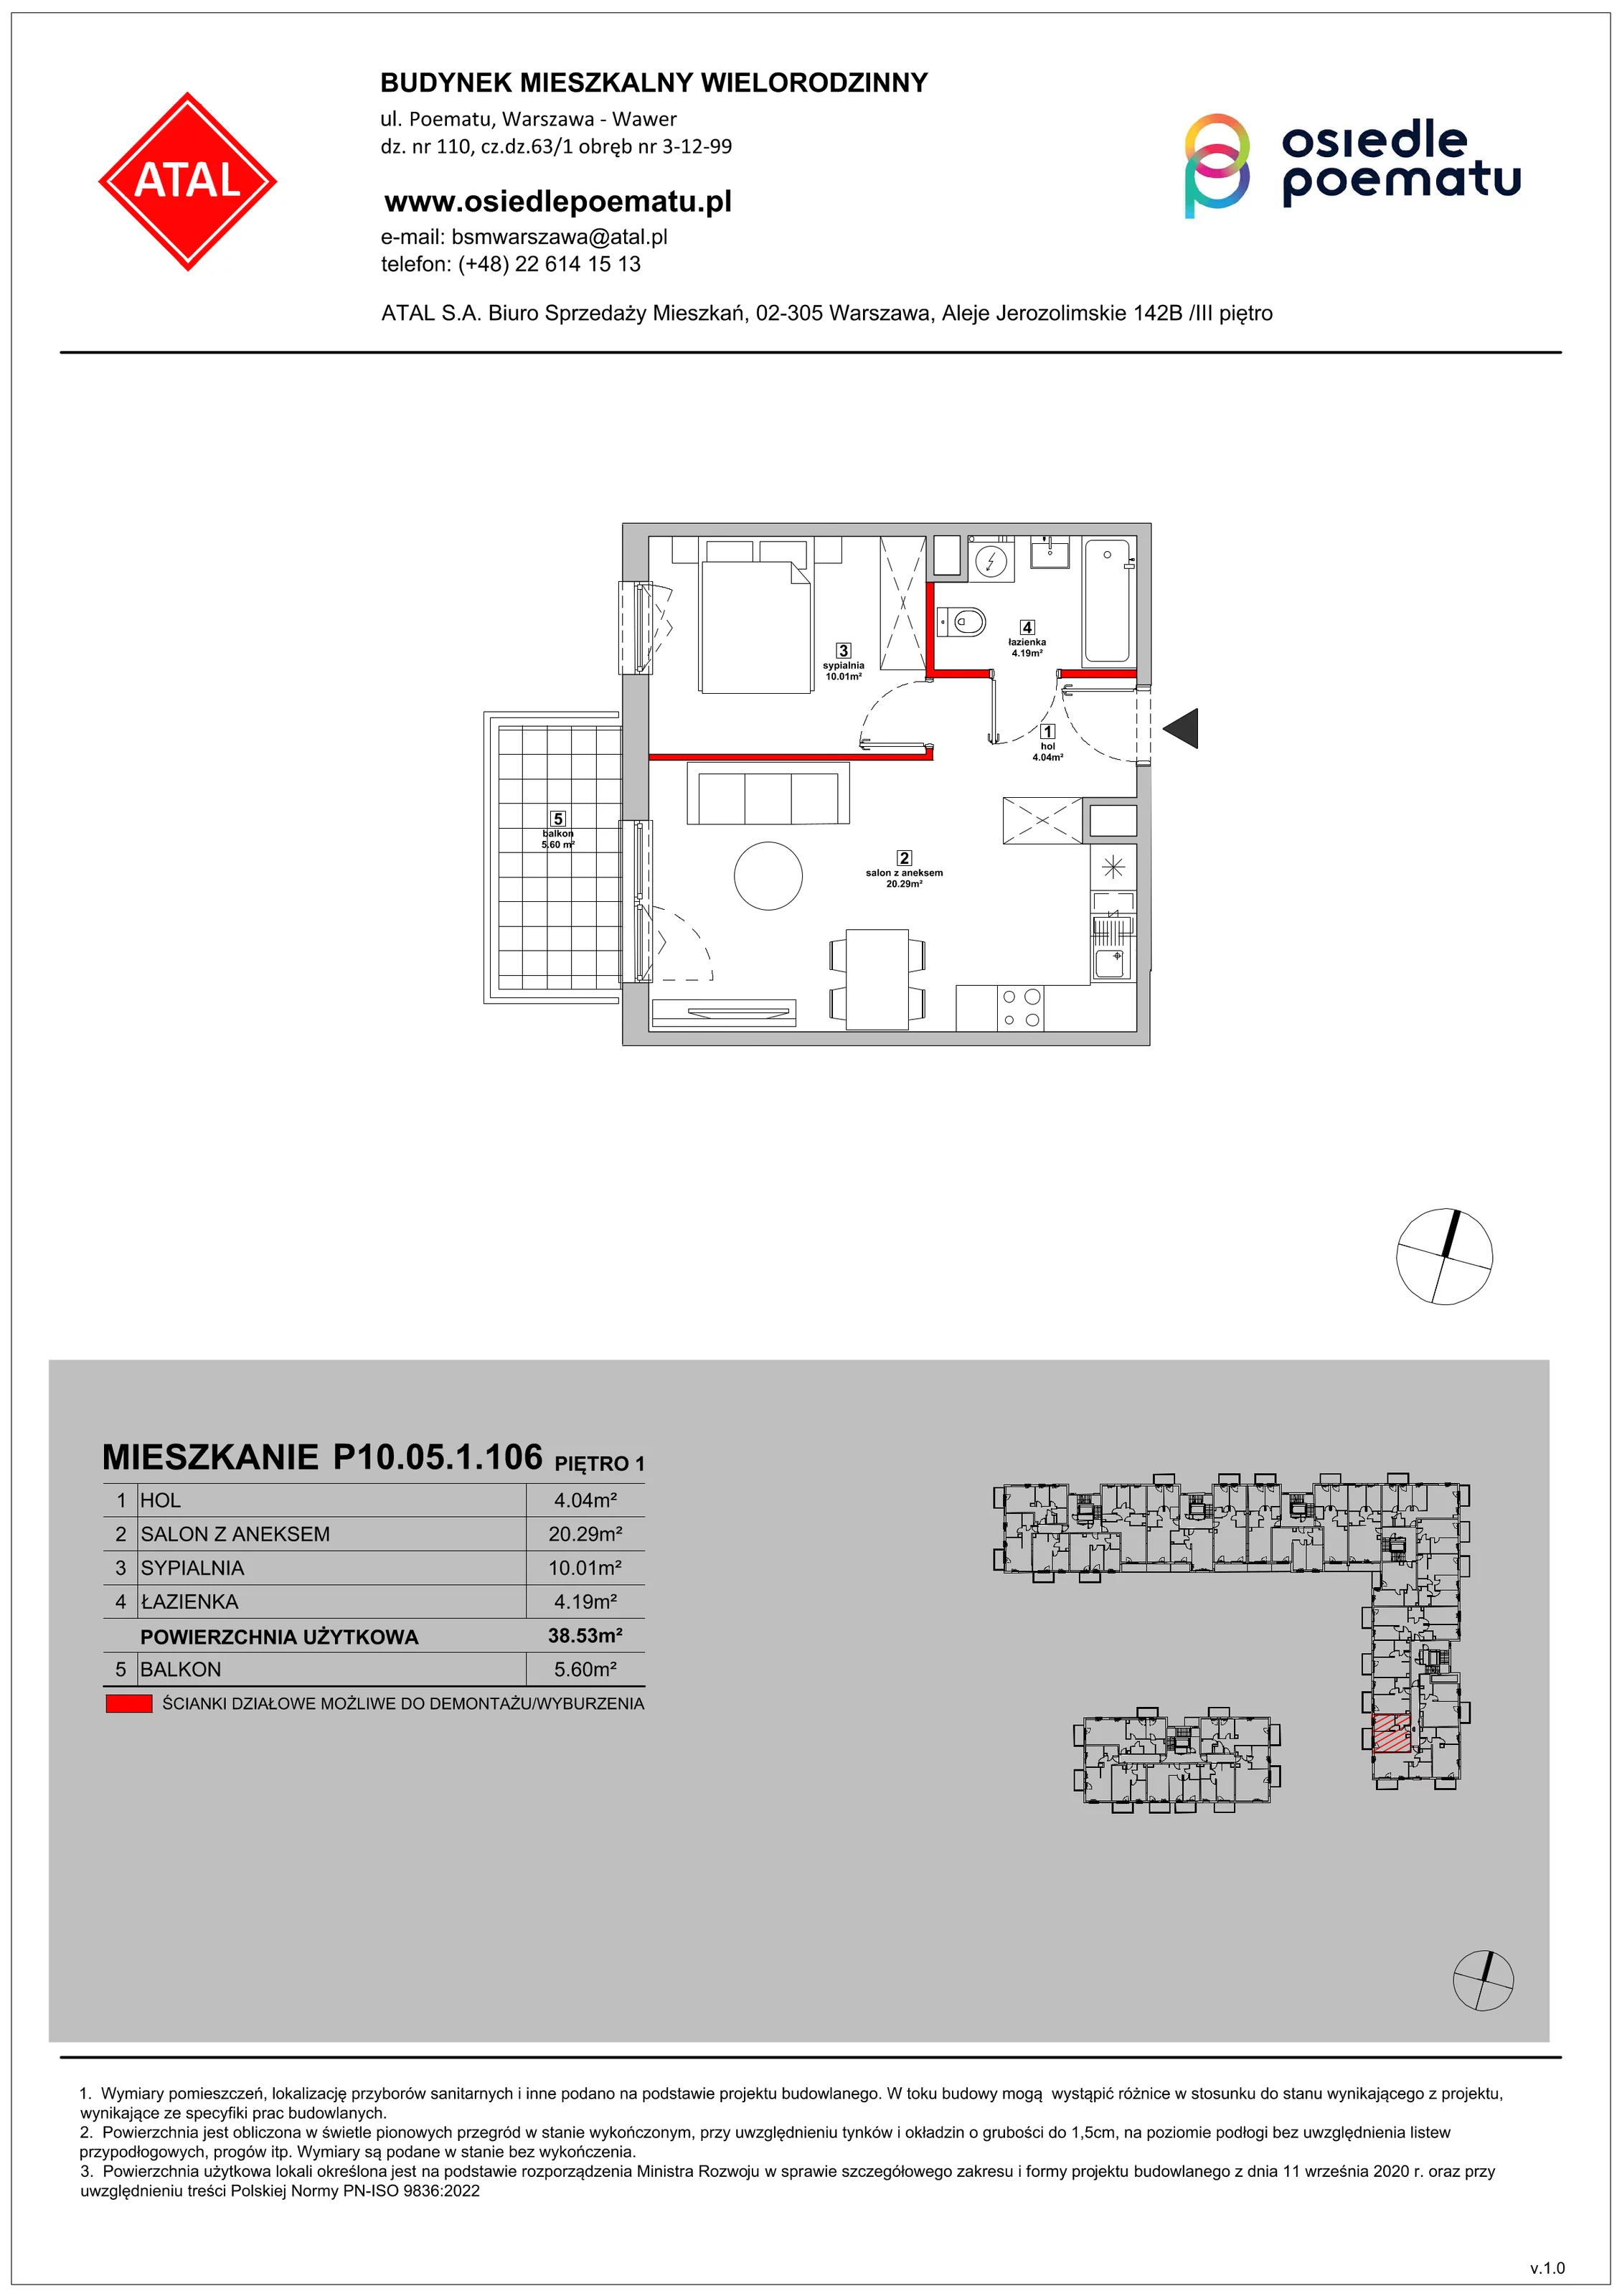 Mieszkanie 38,53 m², piętro 1, oferta nr P10.05.1.106, Osiedle Poematu, Warszawa, Wawer, Falenica, ul. Poematu